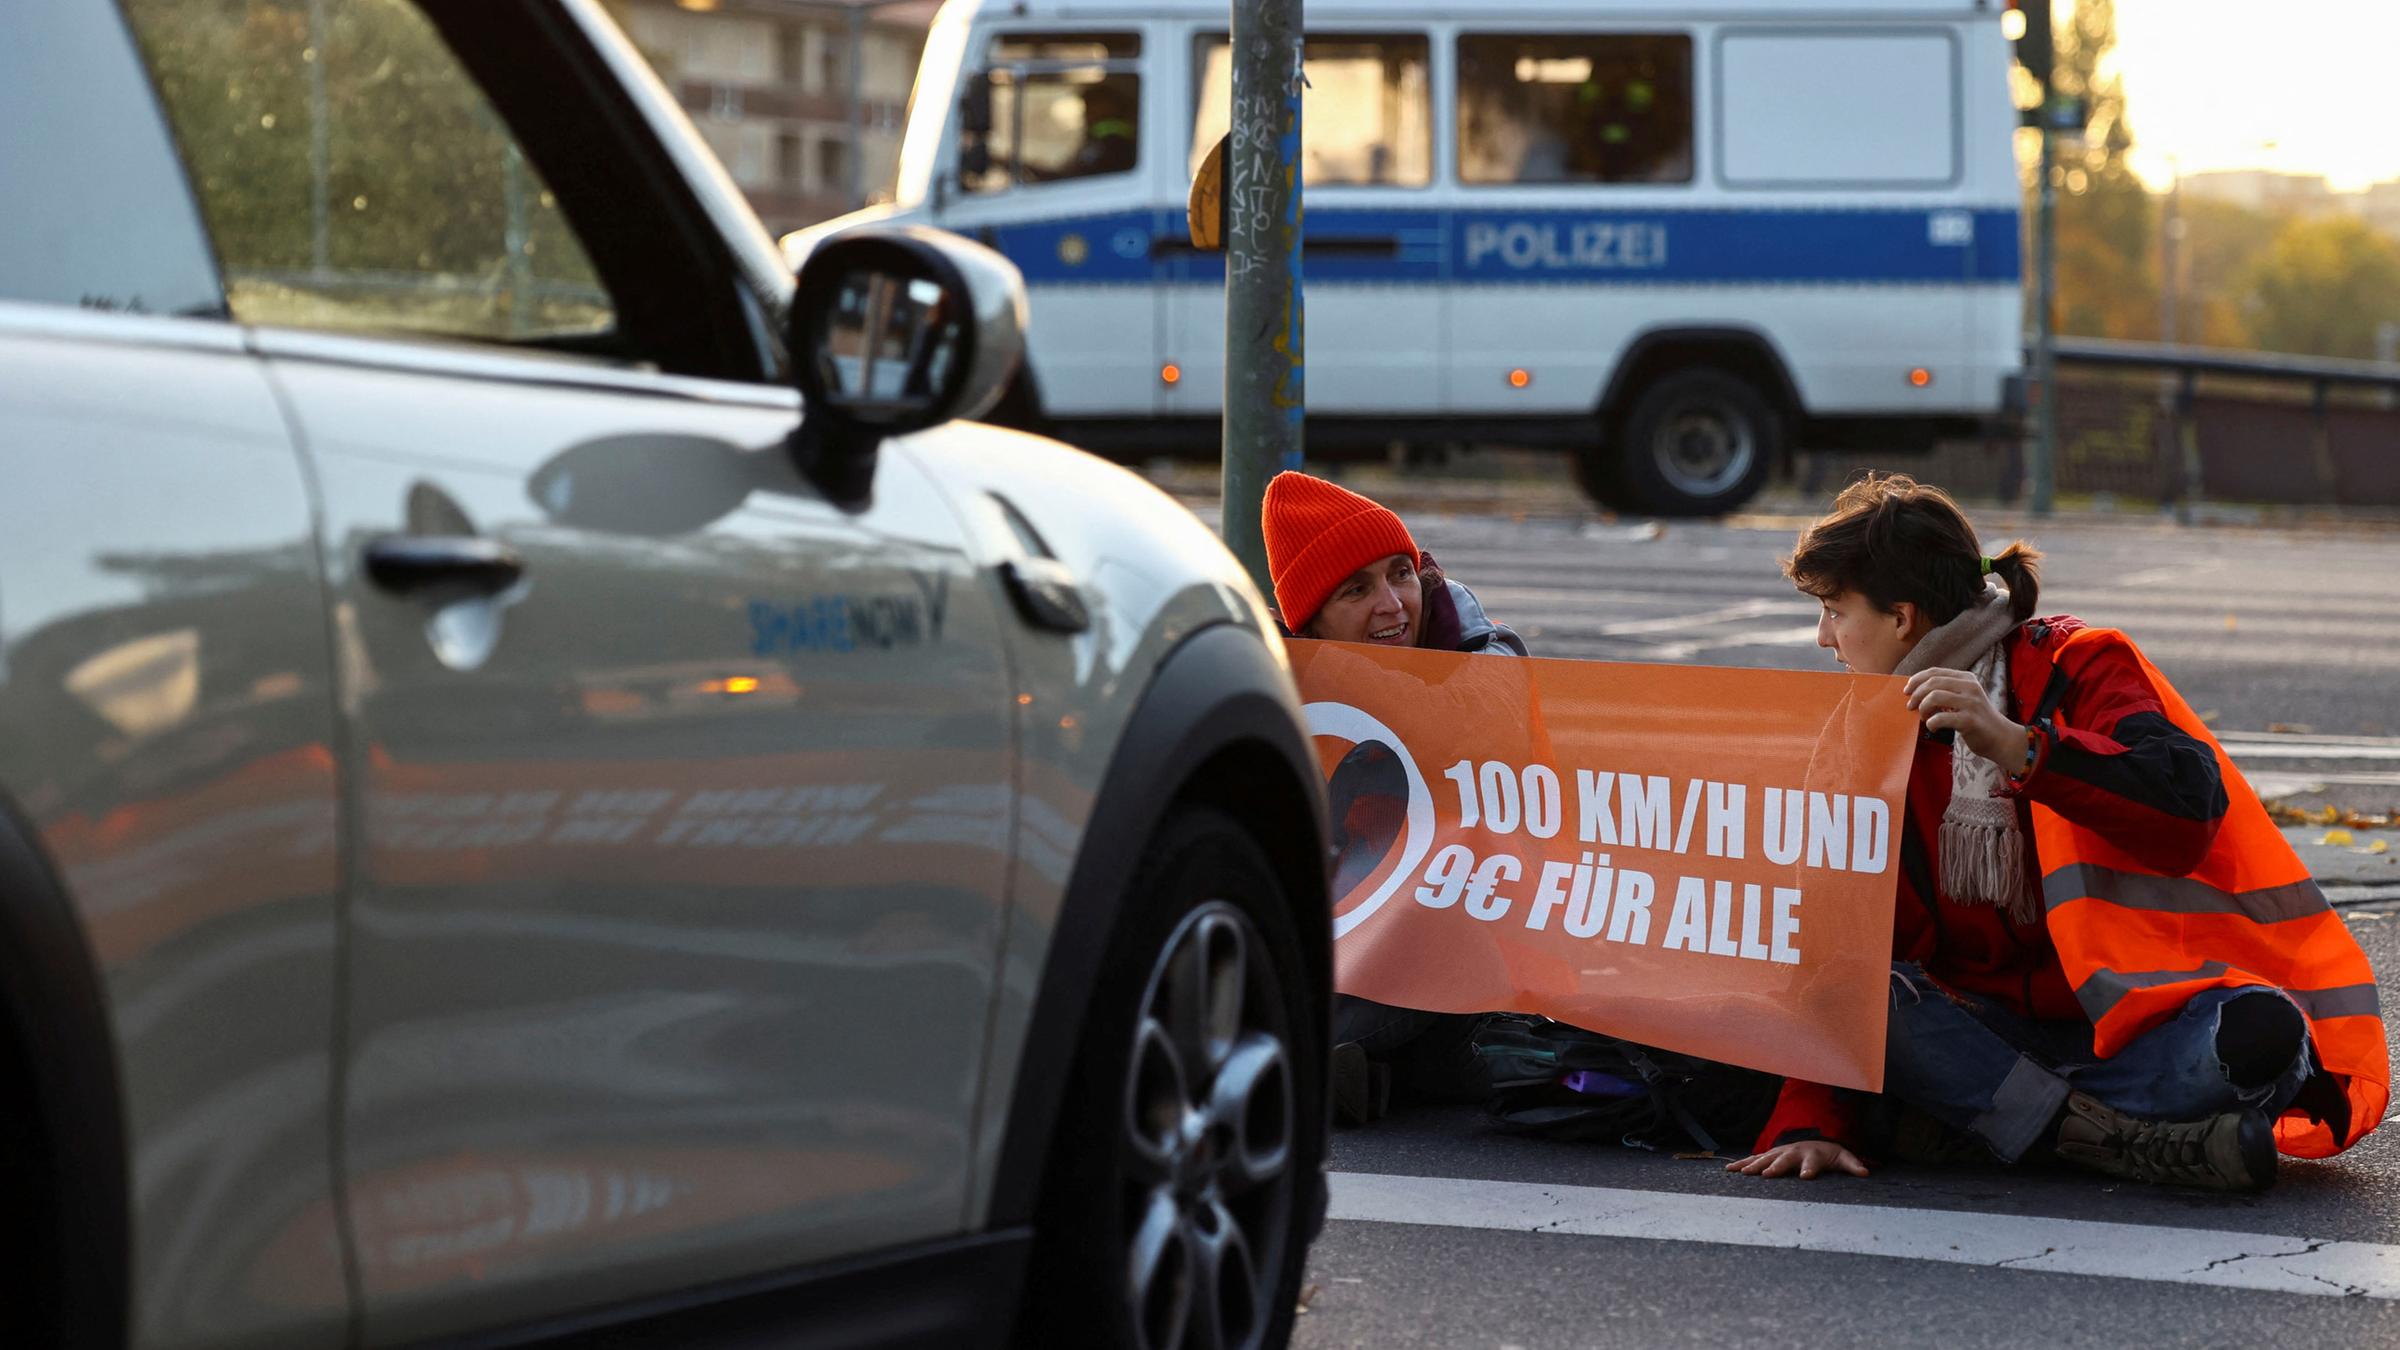 Archiv: Aktivisten der "Letzten Generation" protestieren am 11. 10. 2022 an der Ausfahrt einer Autobahn in Berlin für eine Geschwindigkeitsbegrenzung auf Autobahnen sowie für erschwingliche öffentliche Verkehrsmittel.